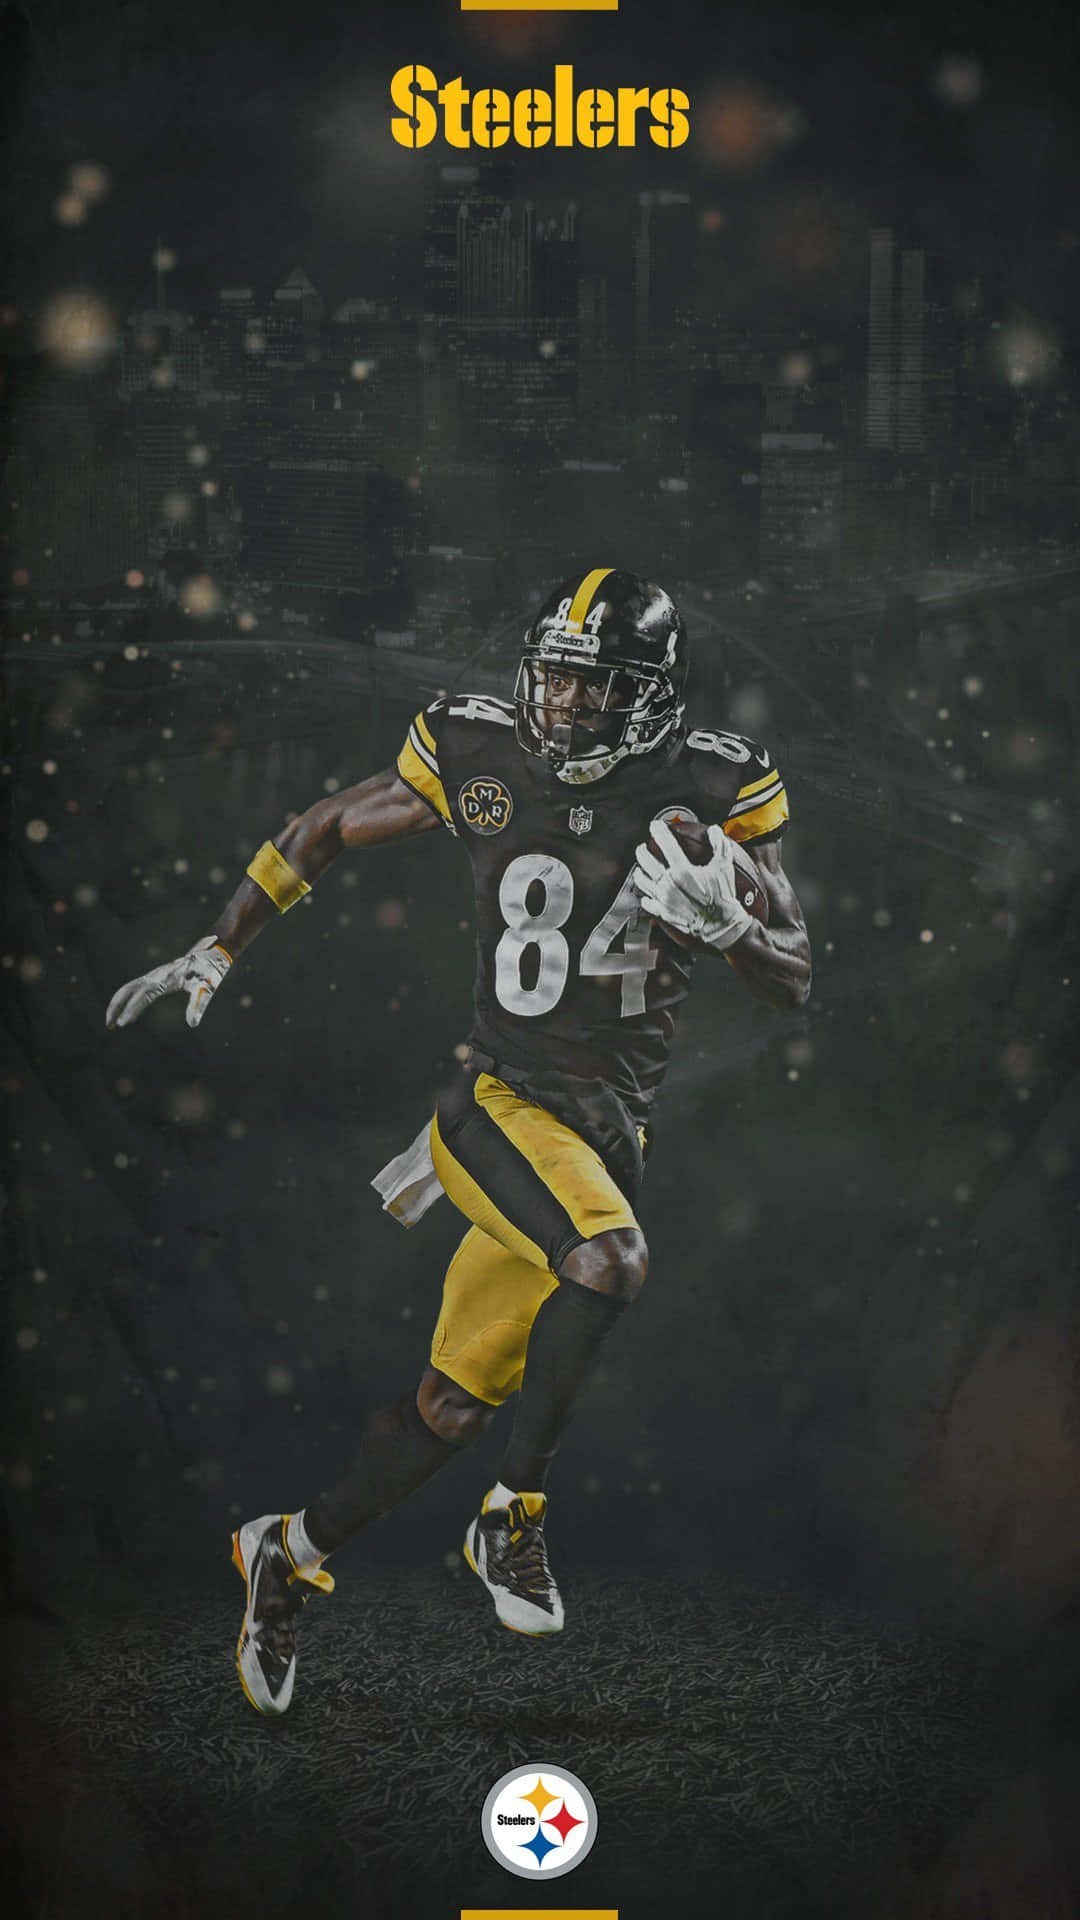 Vis din hold stolthed med et Steelers iPhone wallpaper! Wallpaper